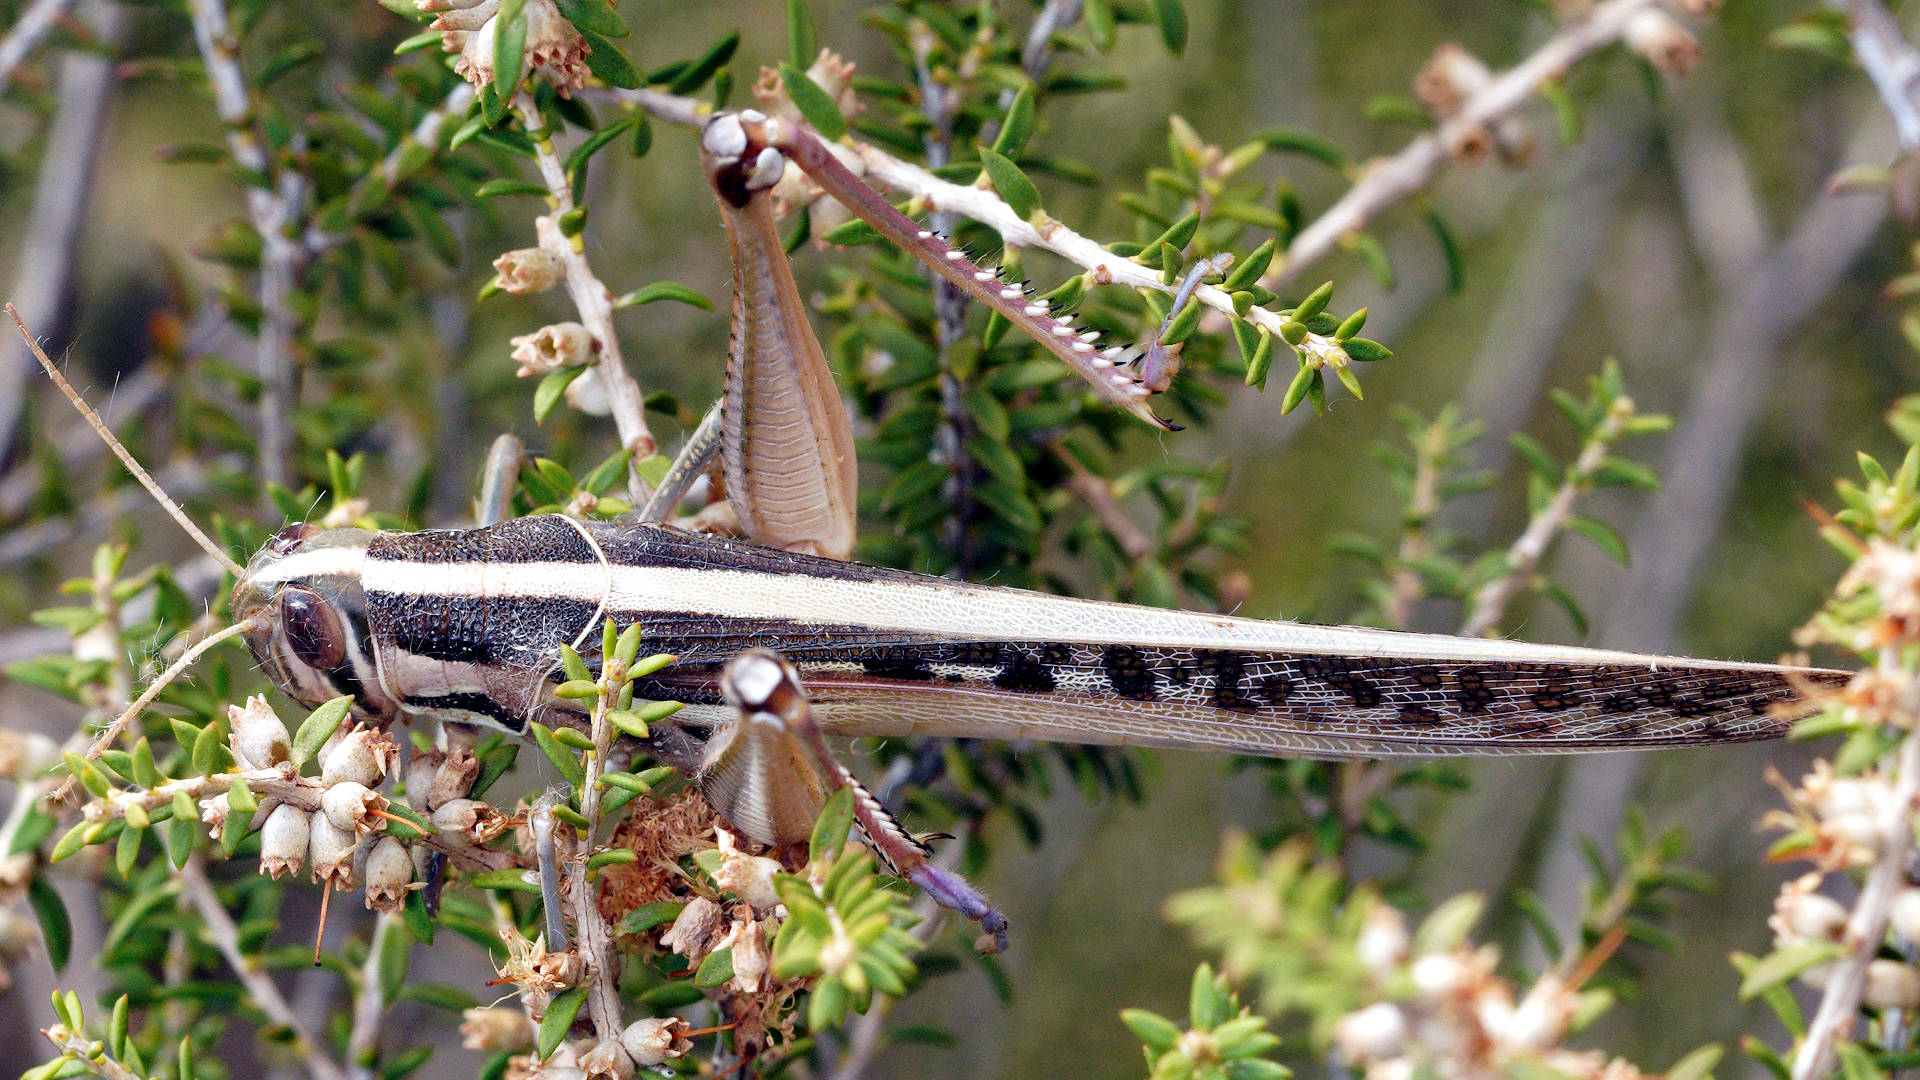 Spur-throated Locust (Austracris guttulosa)